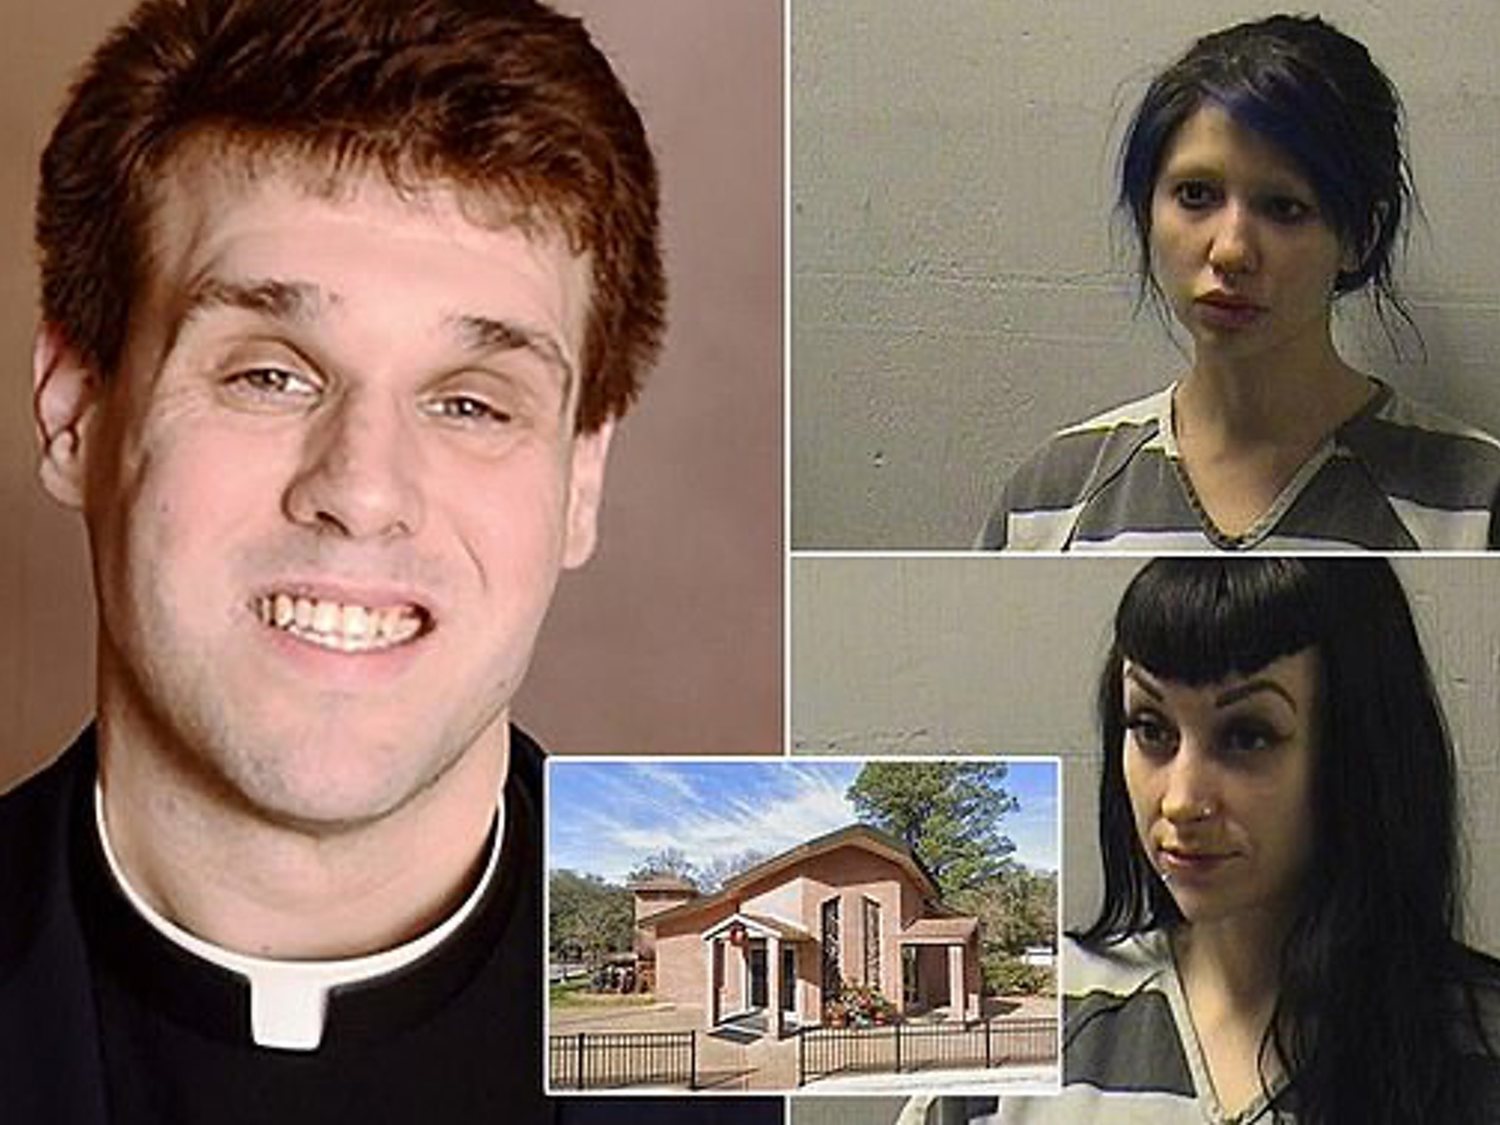 Graban a un sacerdote católico siendo sodomizado por dos dominatrix en el altar de su iglesia